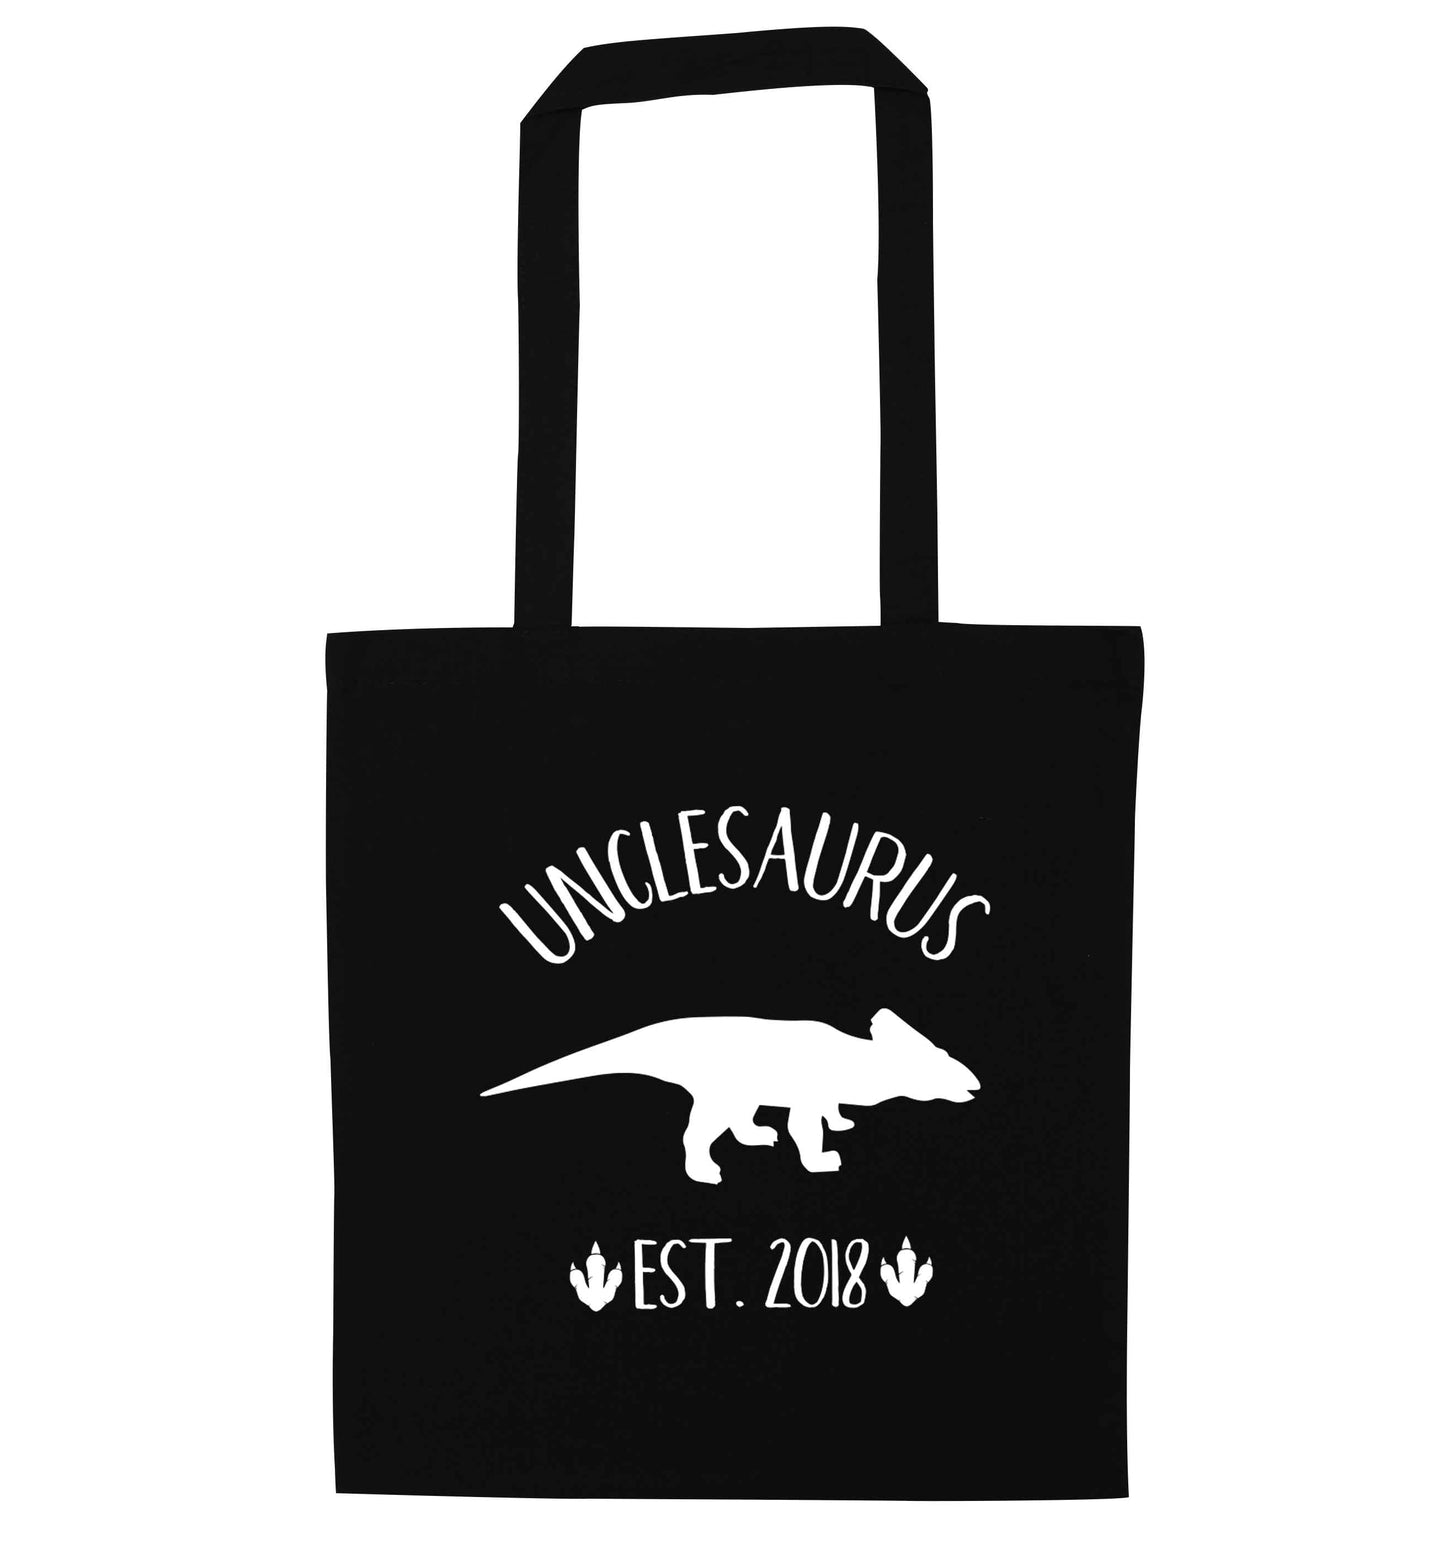 Personalised unclesaurus since (custom date) black tote bag